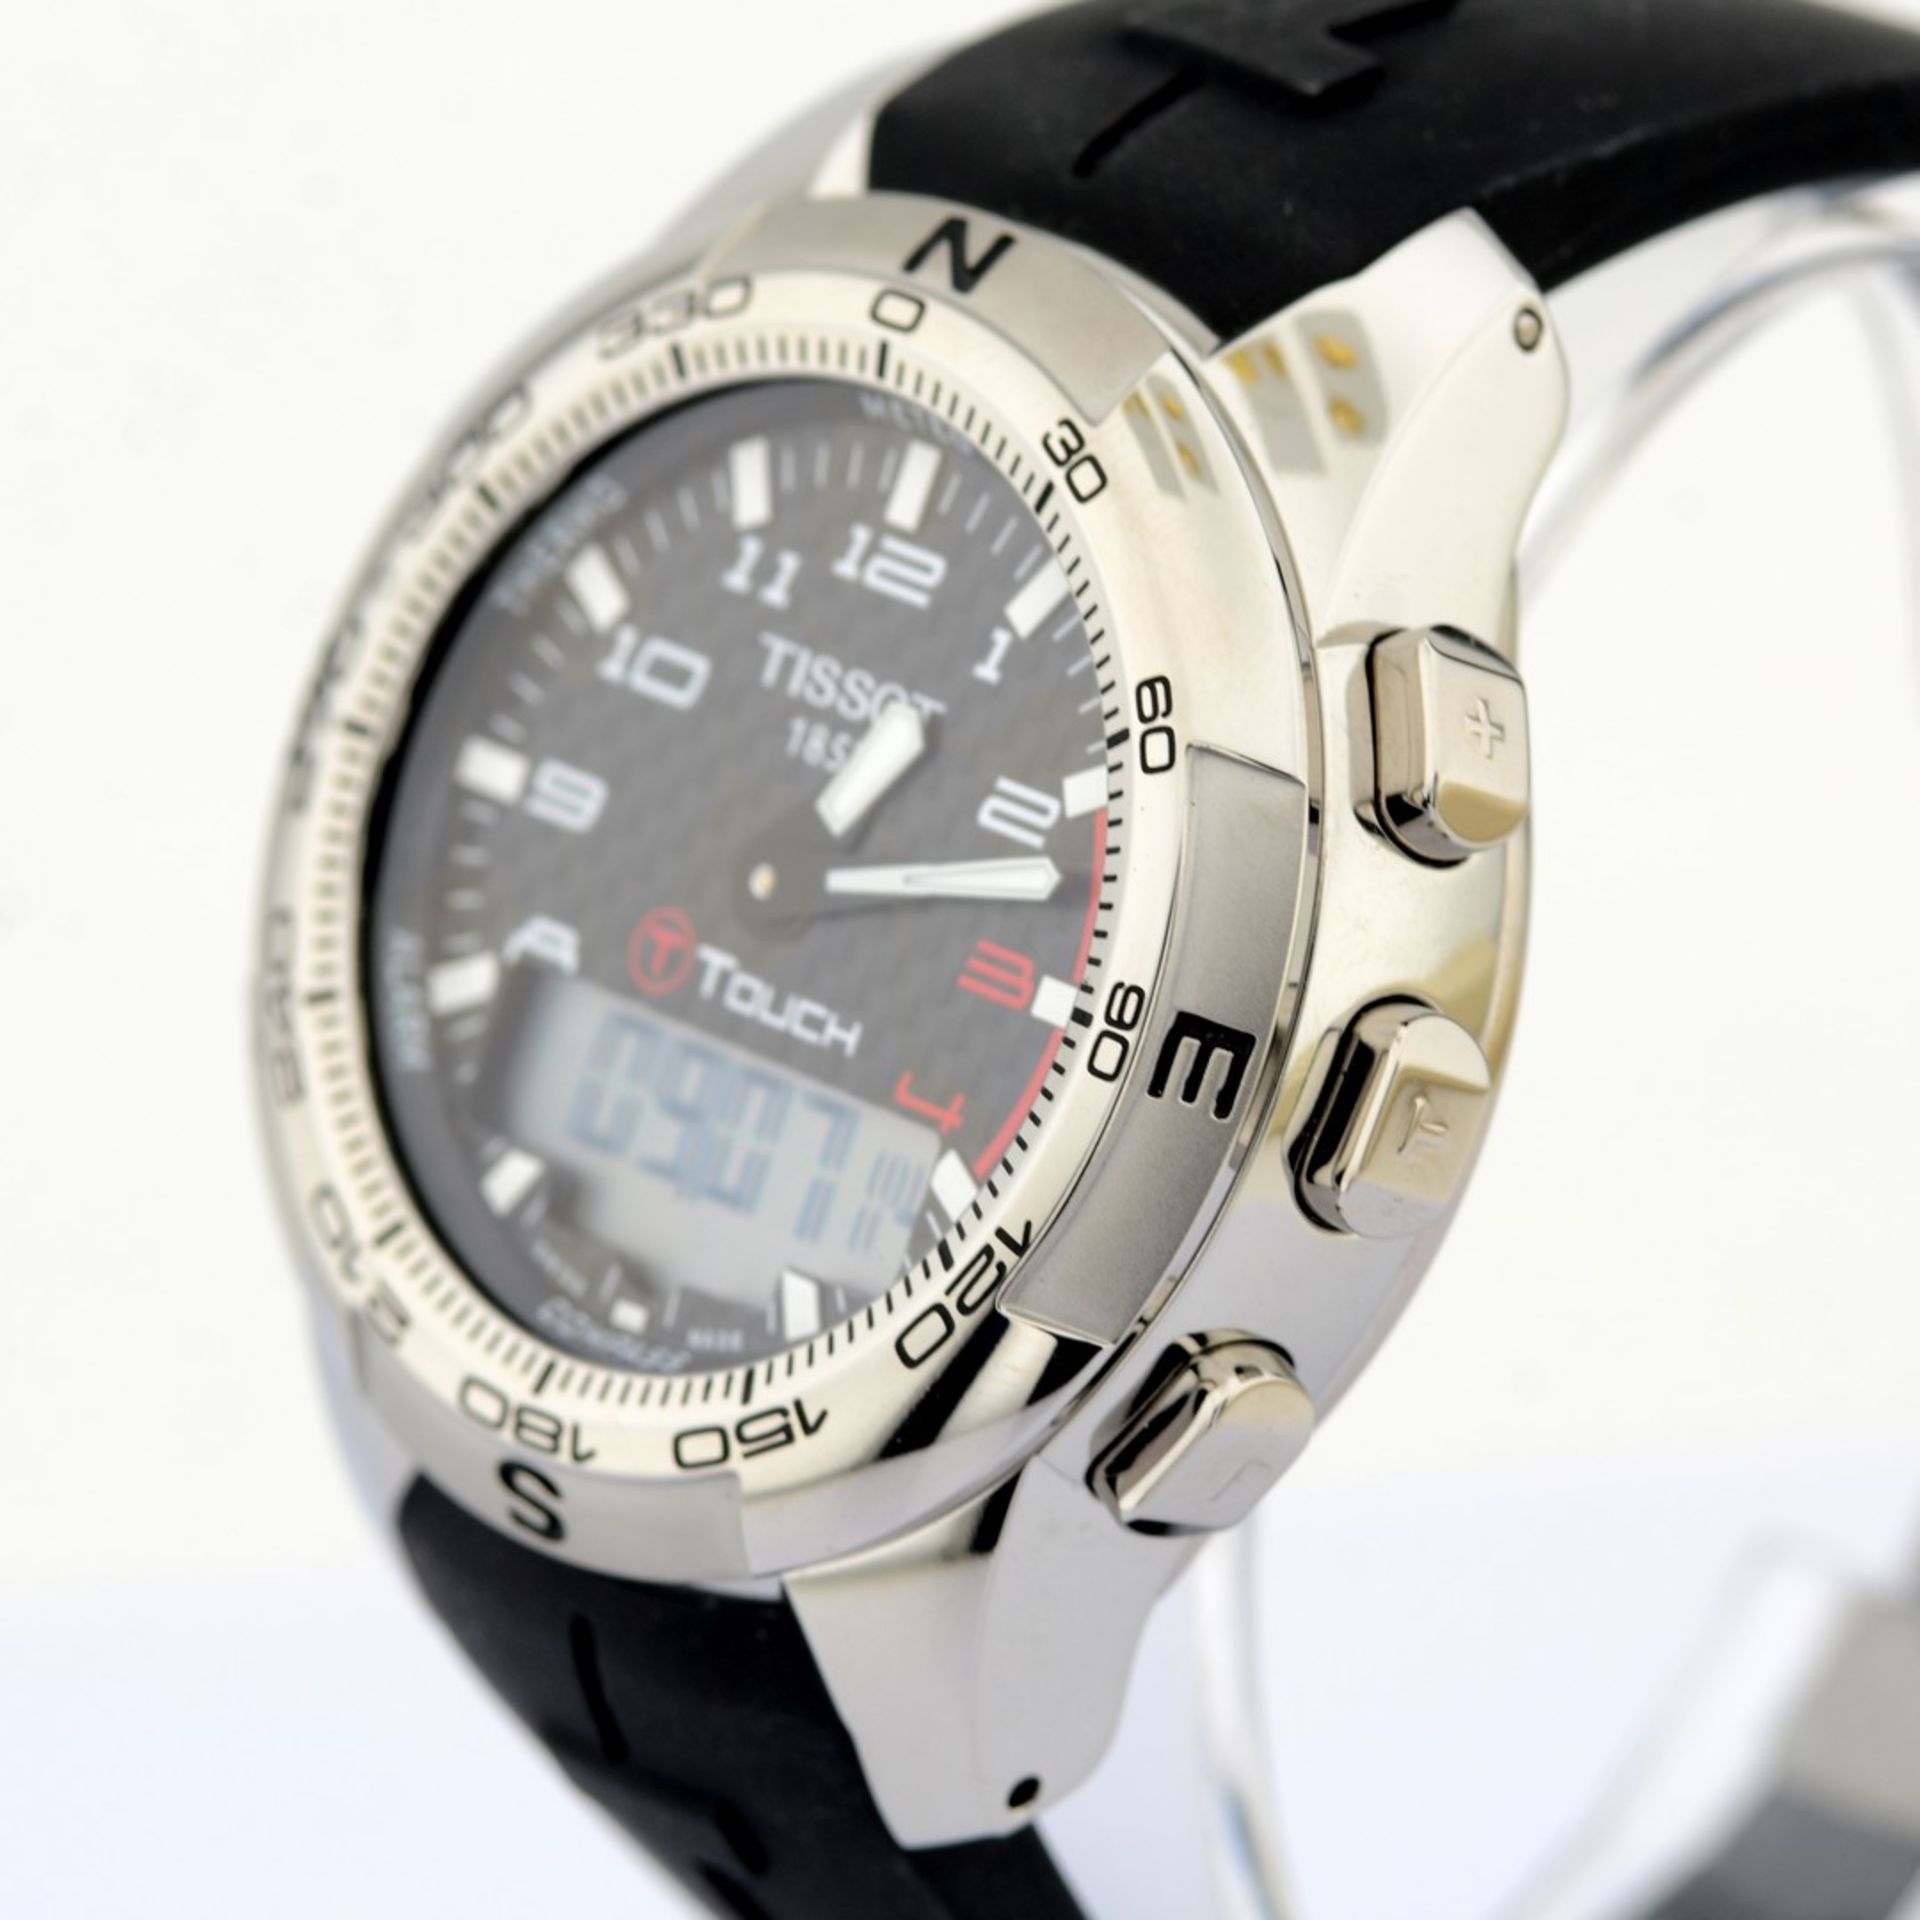 Tissot / T-Touch II Smart (New) - Gentlmen's Steel Wrist Watch - Image 5 of 12